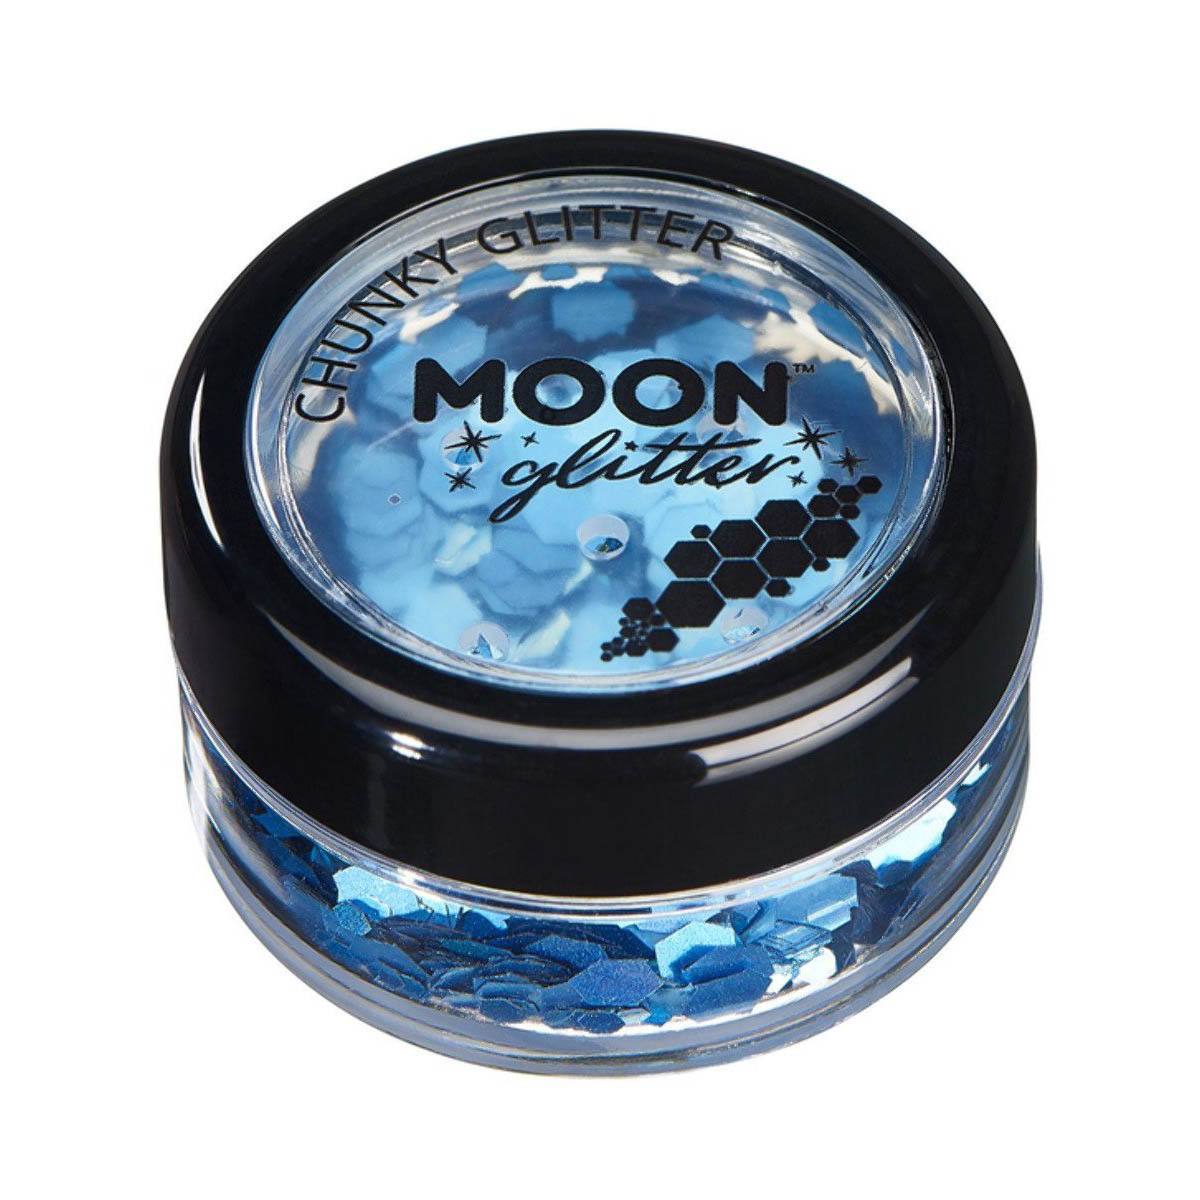 Moon glitter i burk, chunky holografisk 3g Blå